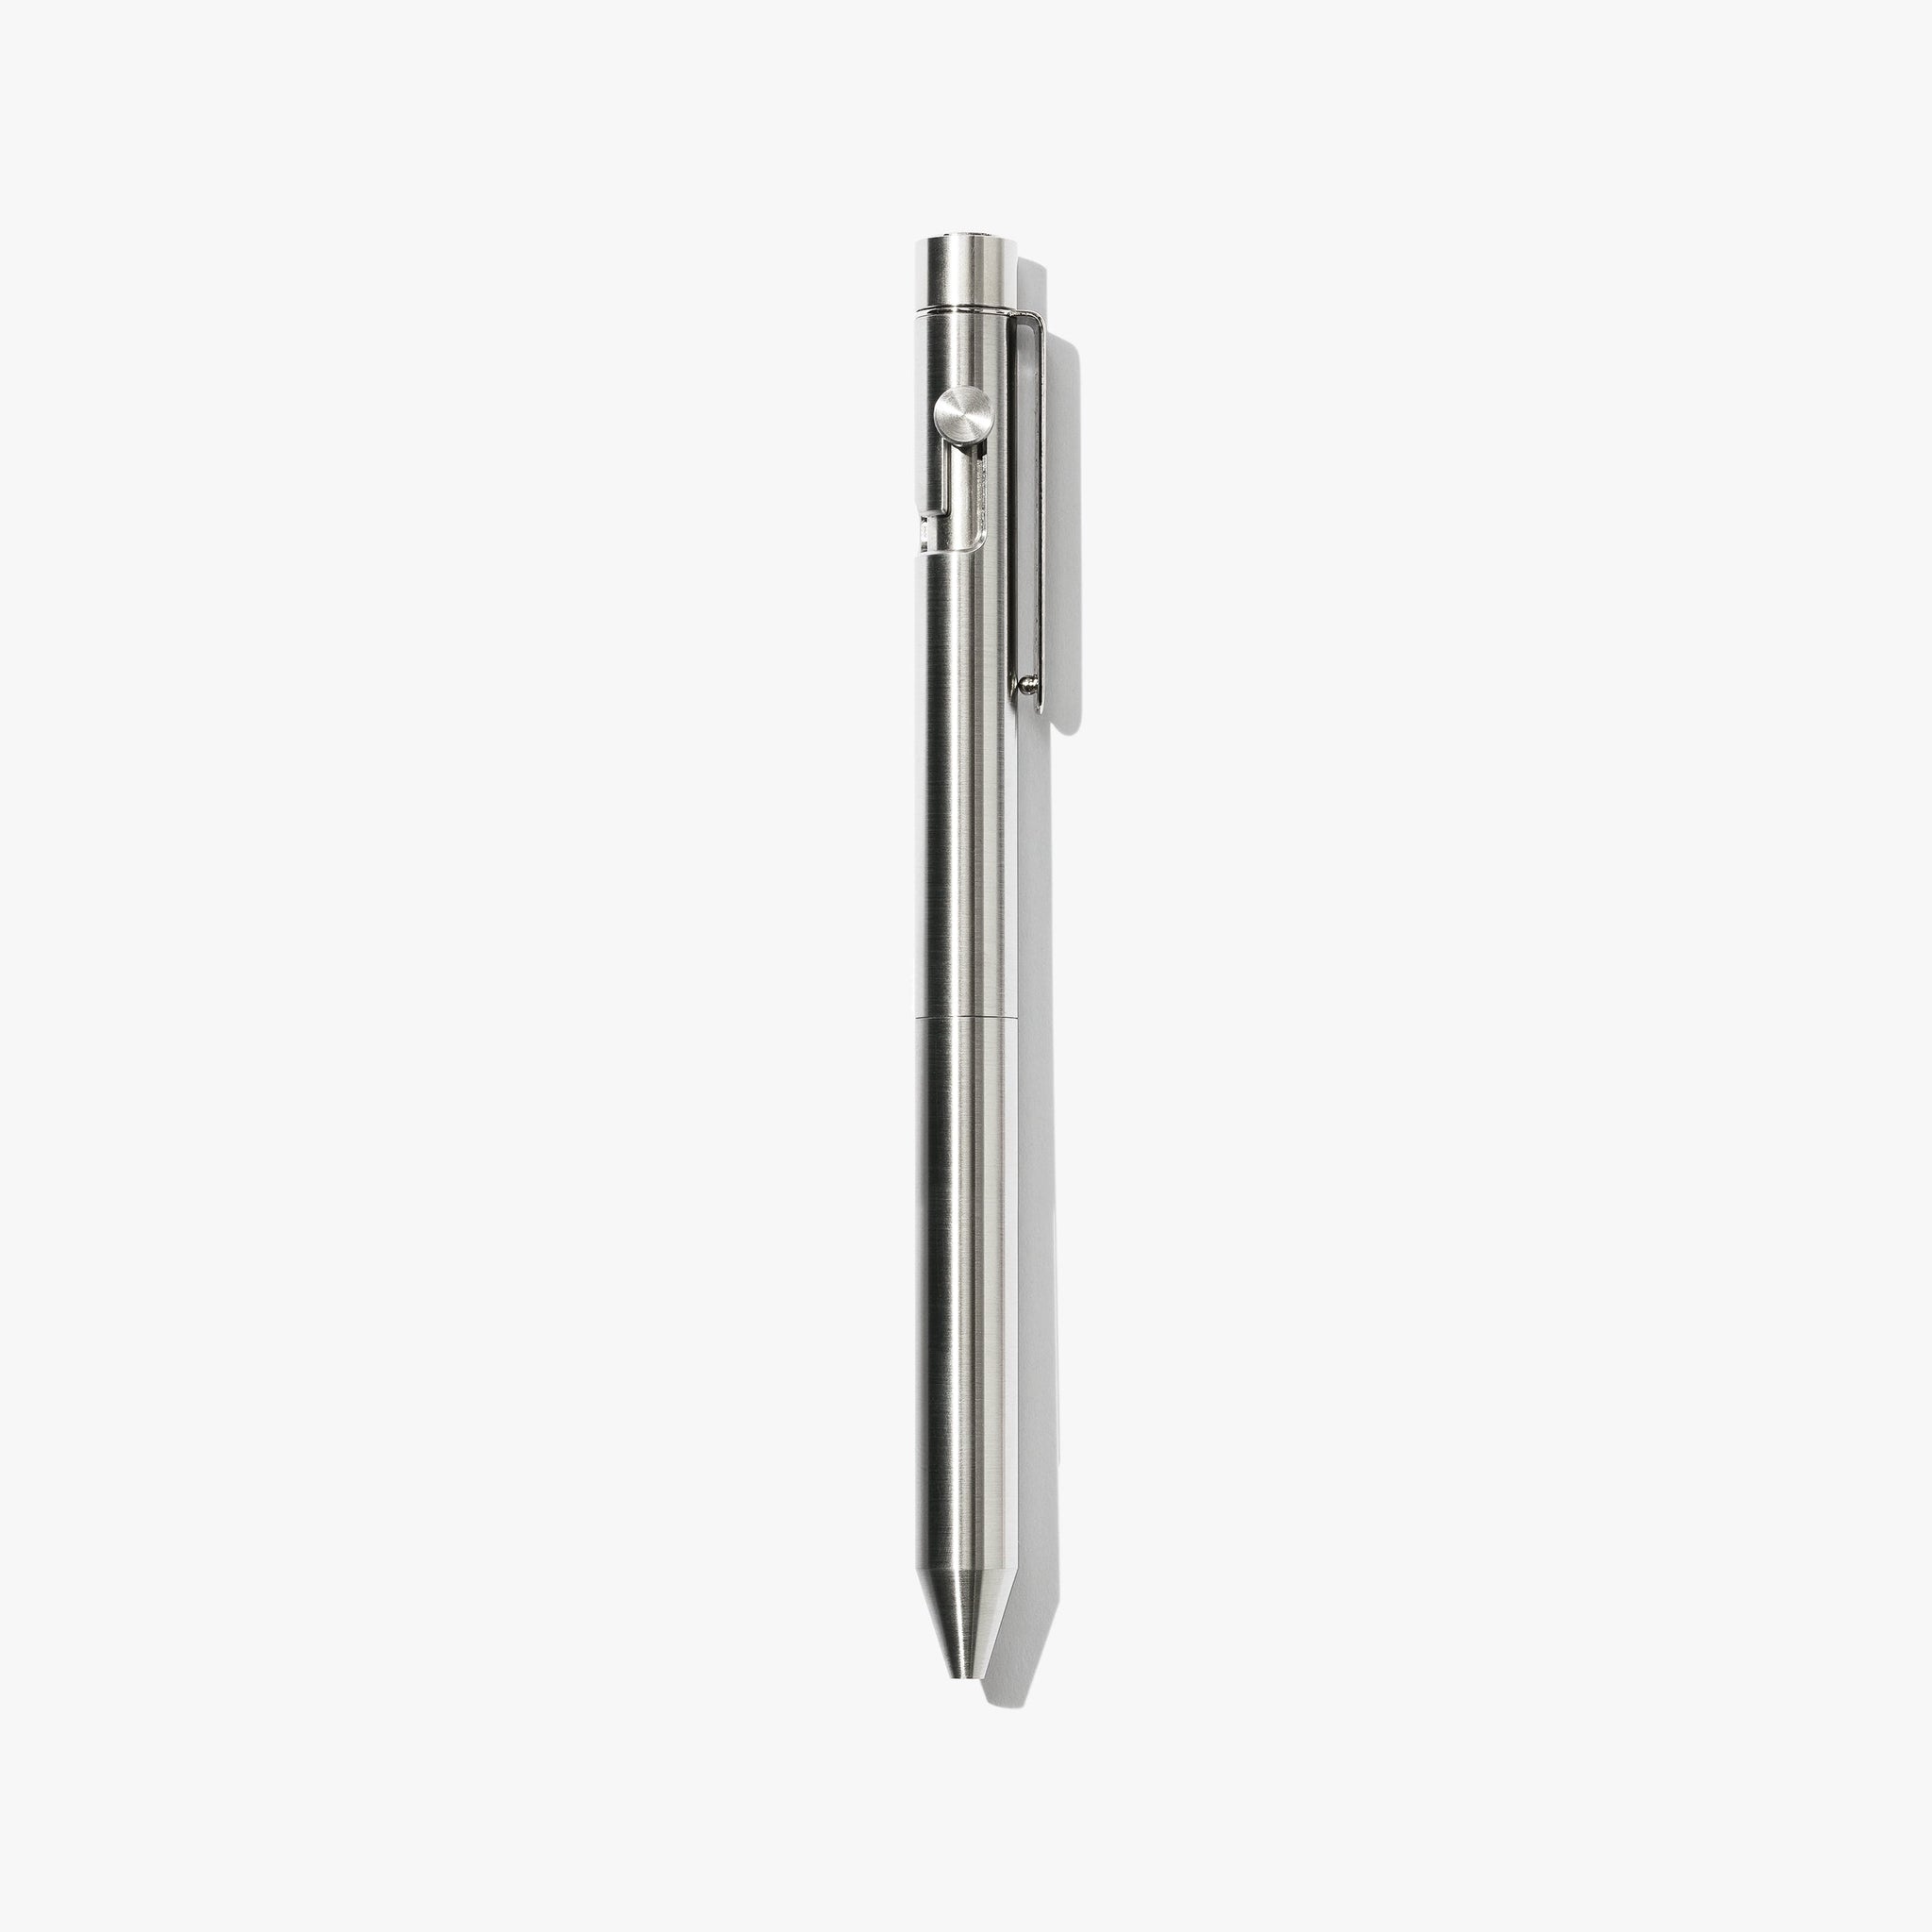 Inventery - Bolt Action Pen V.02 (Stainless Steel)